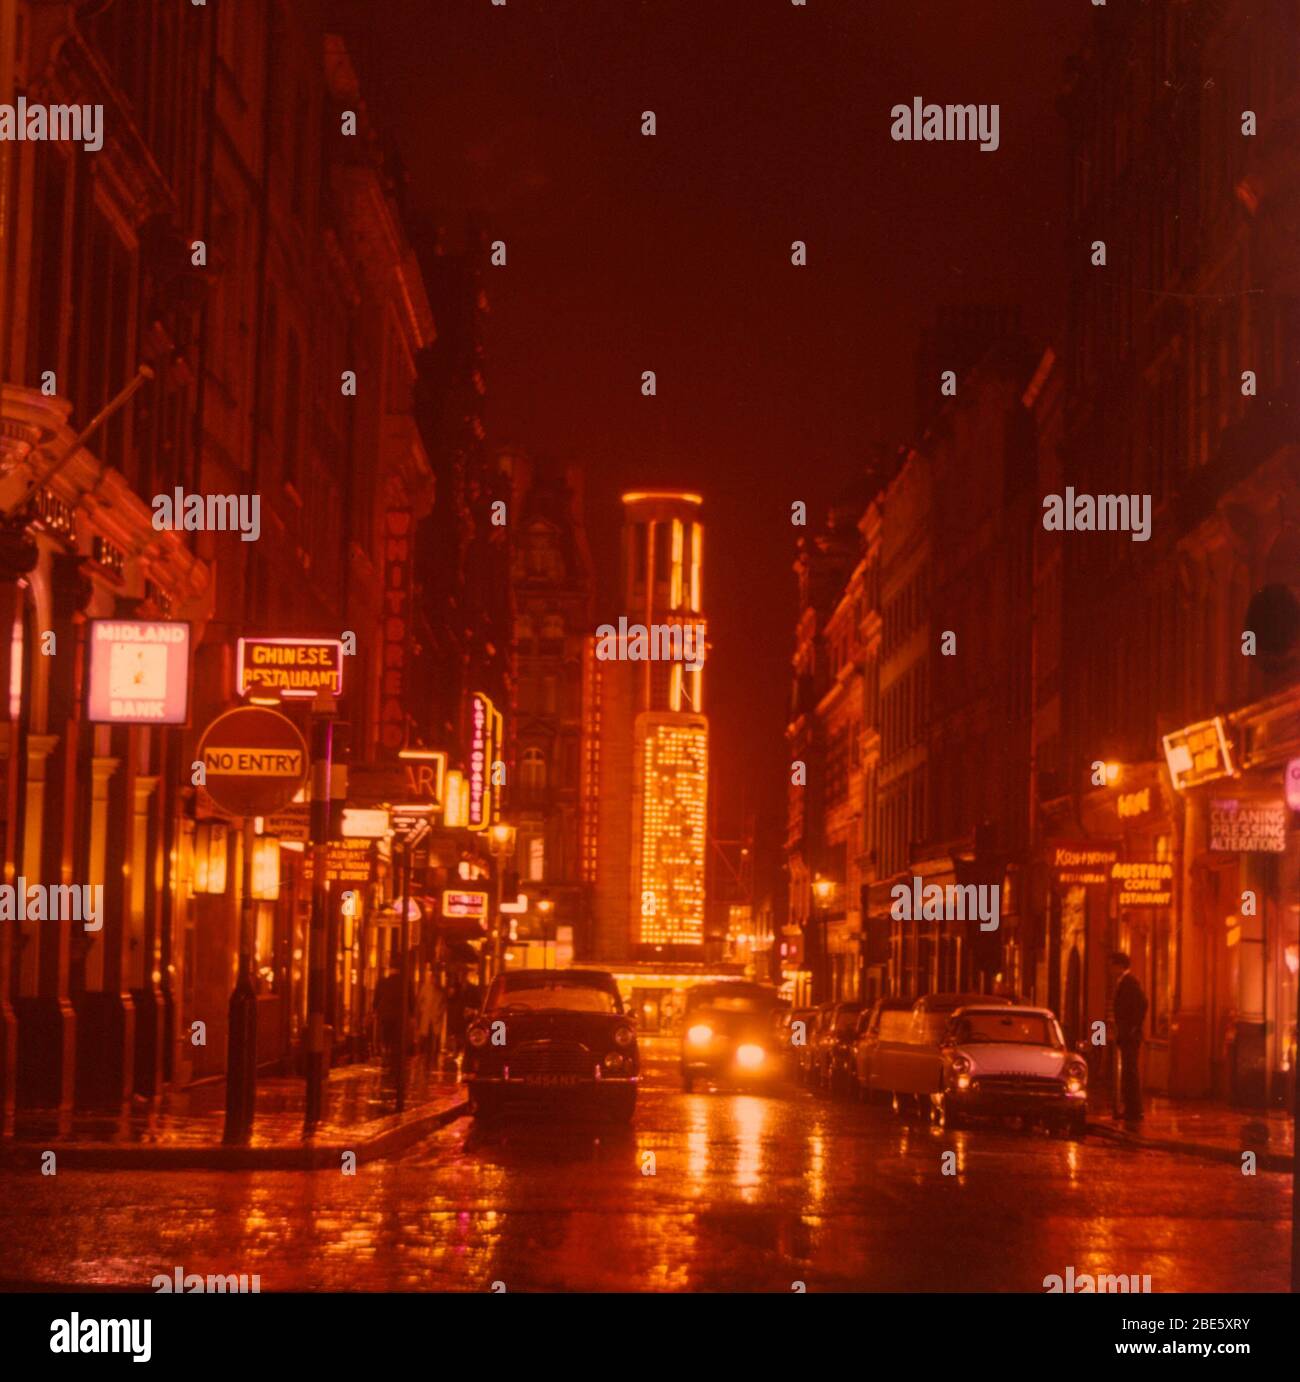 Eine Aufnahme, die 1964 bei Nacht und im Regen auf die Rupert Street in Londons Soho mit dem Prince of Wales Theatre am Ende und den Neonlichtern in den Pfützen gedreht wurde. Stockfoto